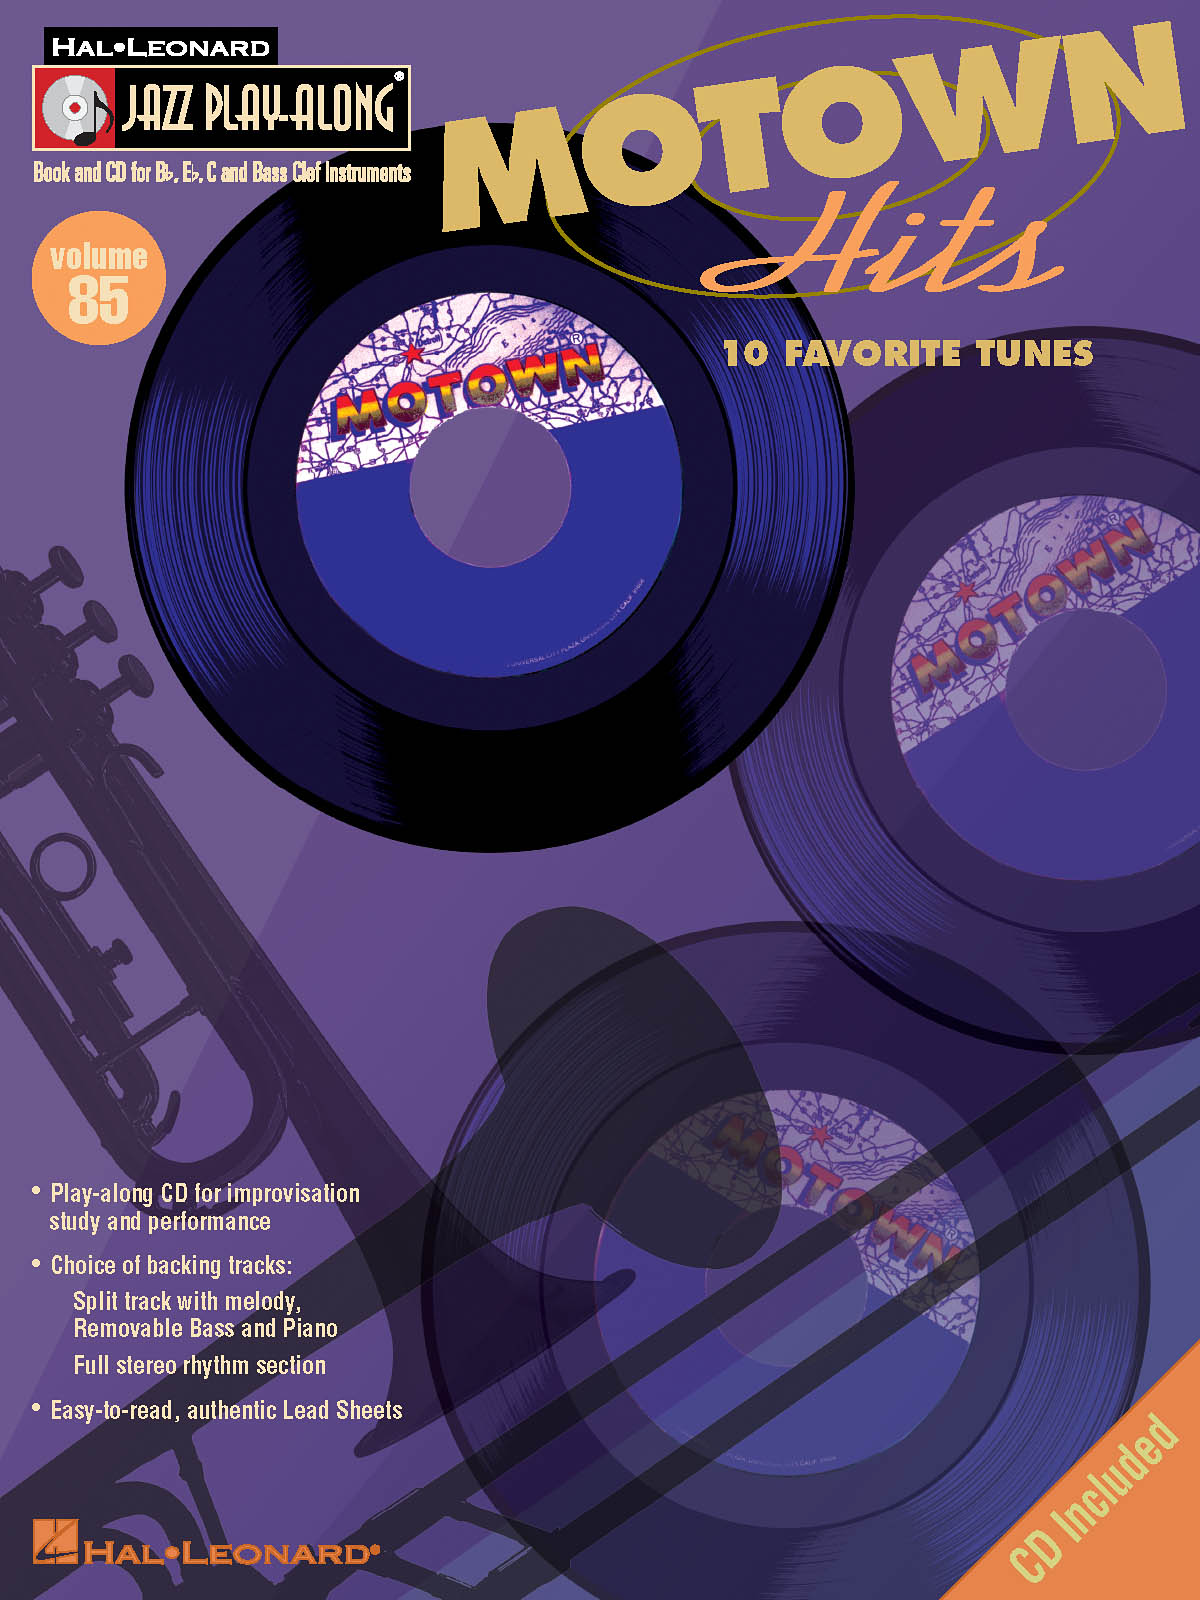 Motown Hits  - Jazz Play-Along Volume 85 - melodie s akordy pro nástroje v ladění C